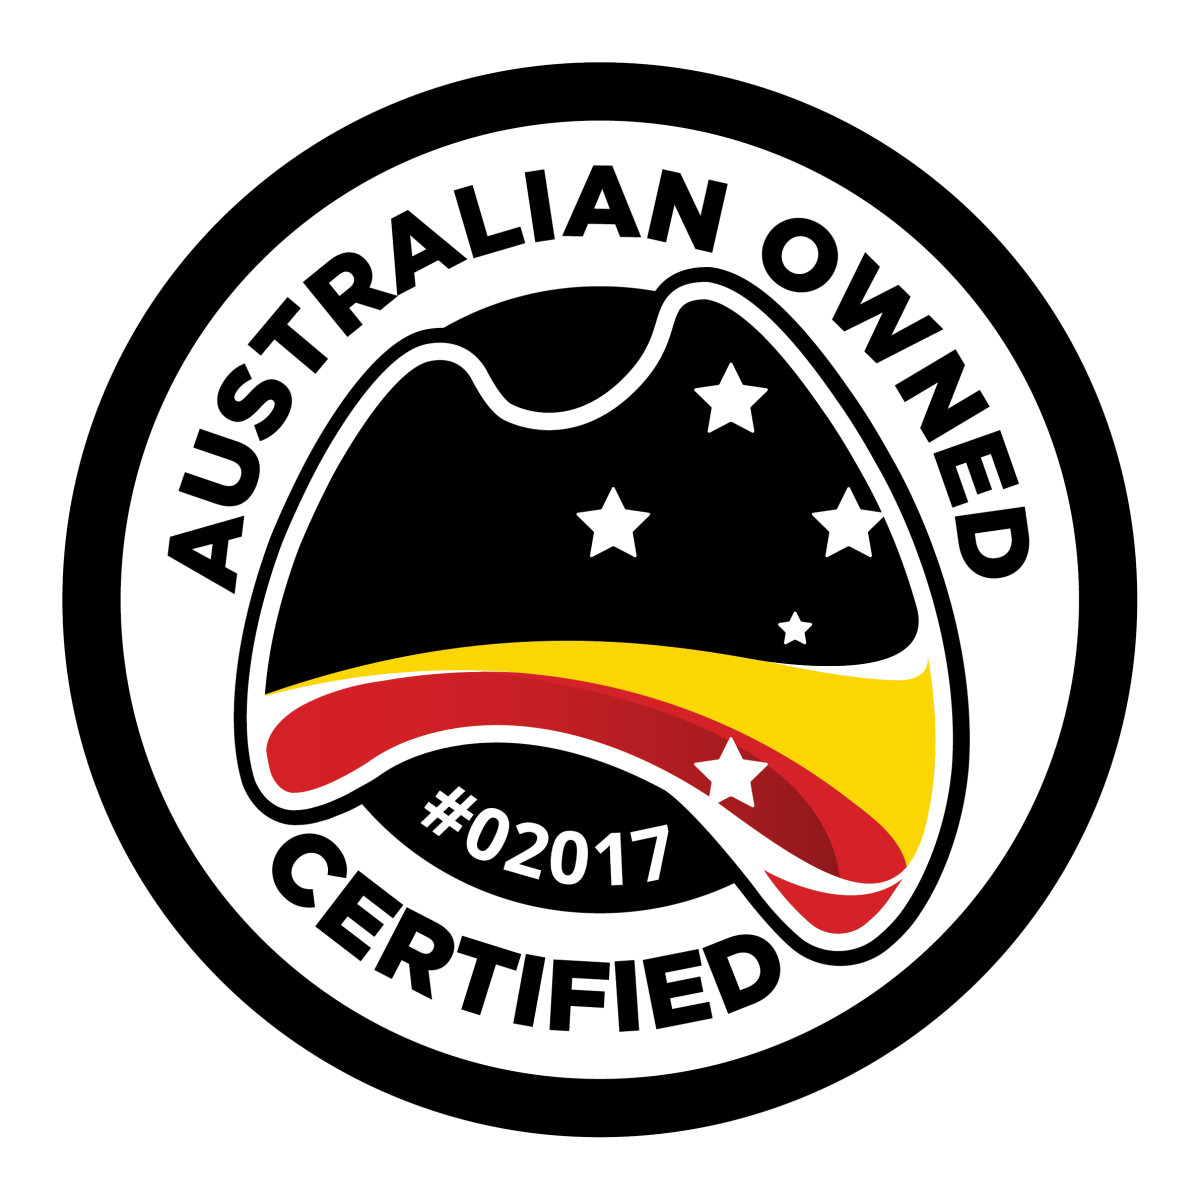 Australian Owned